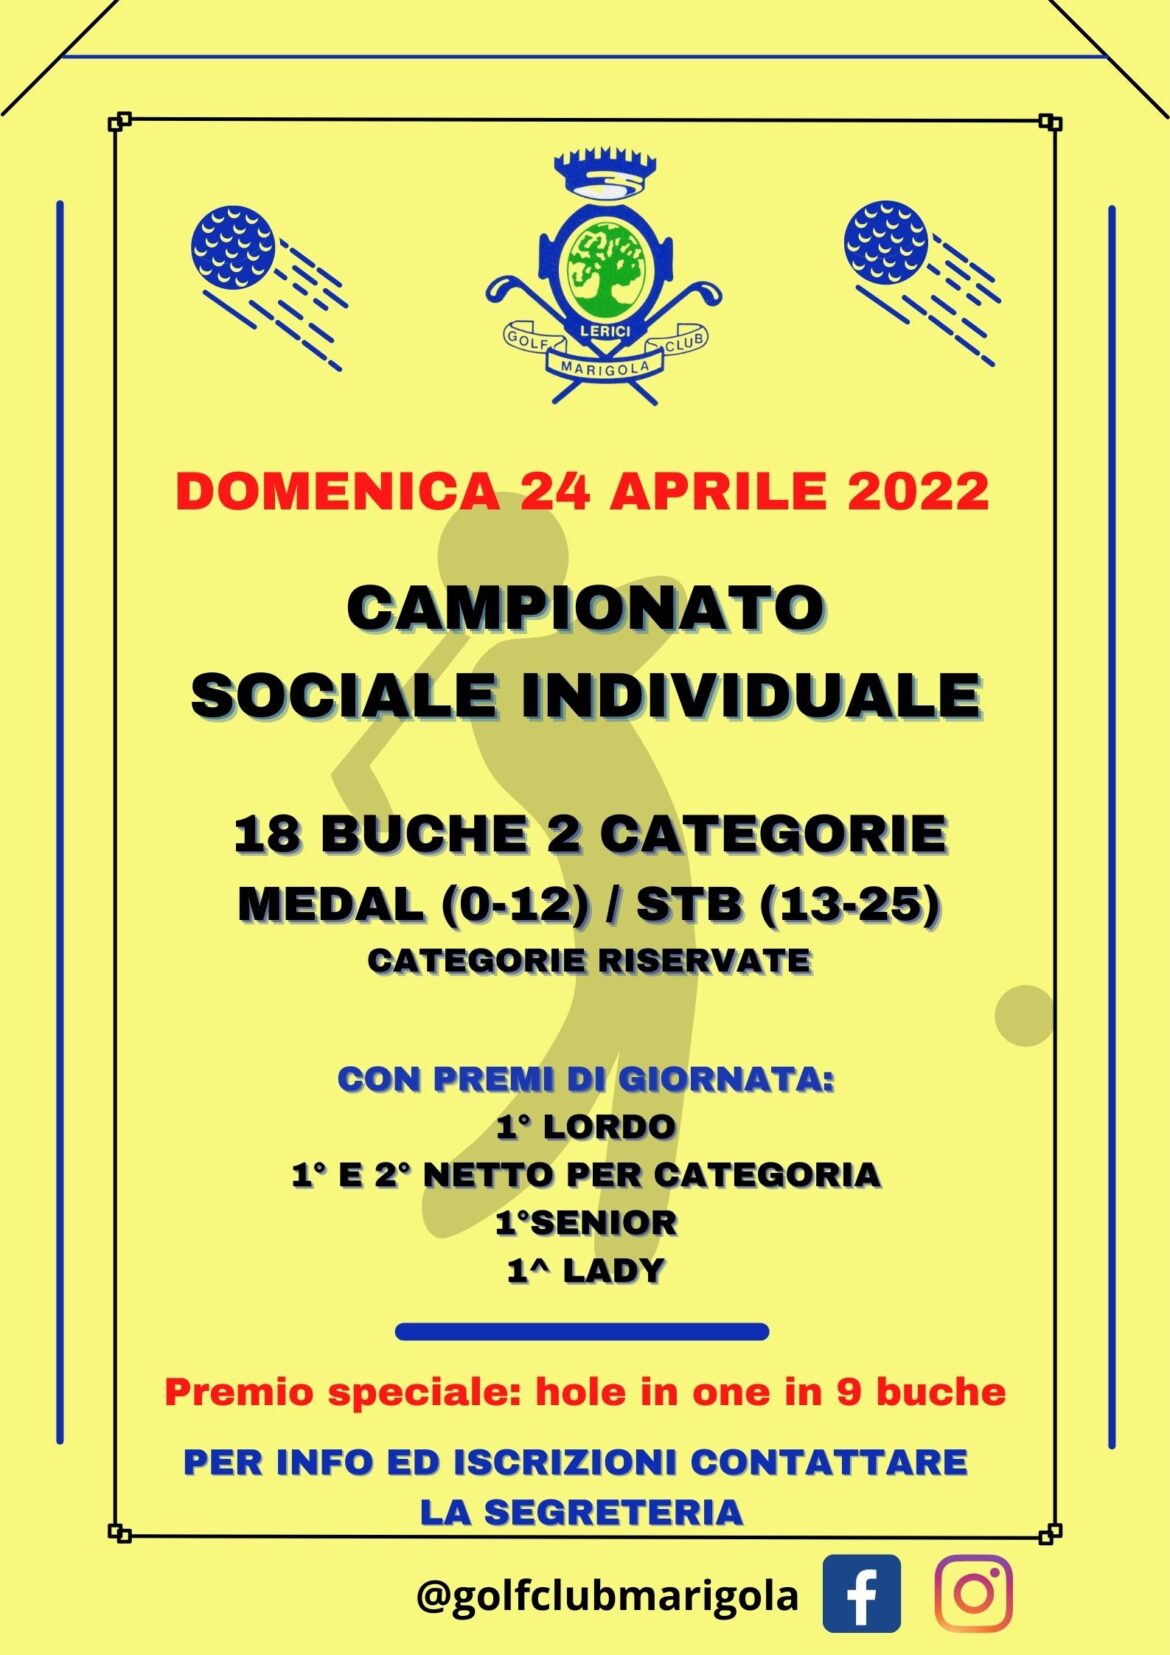 CAMPIONATO SOCIALE INDIVIDUALE – domenica 24 aprile 2022 – GARA ANNULLATA